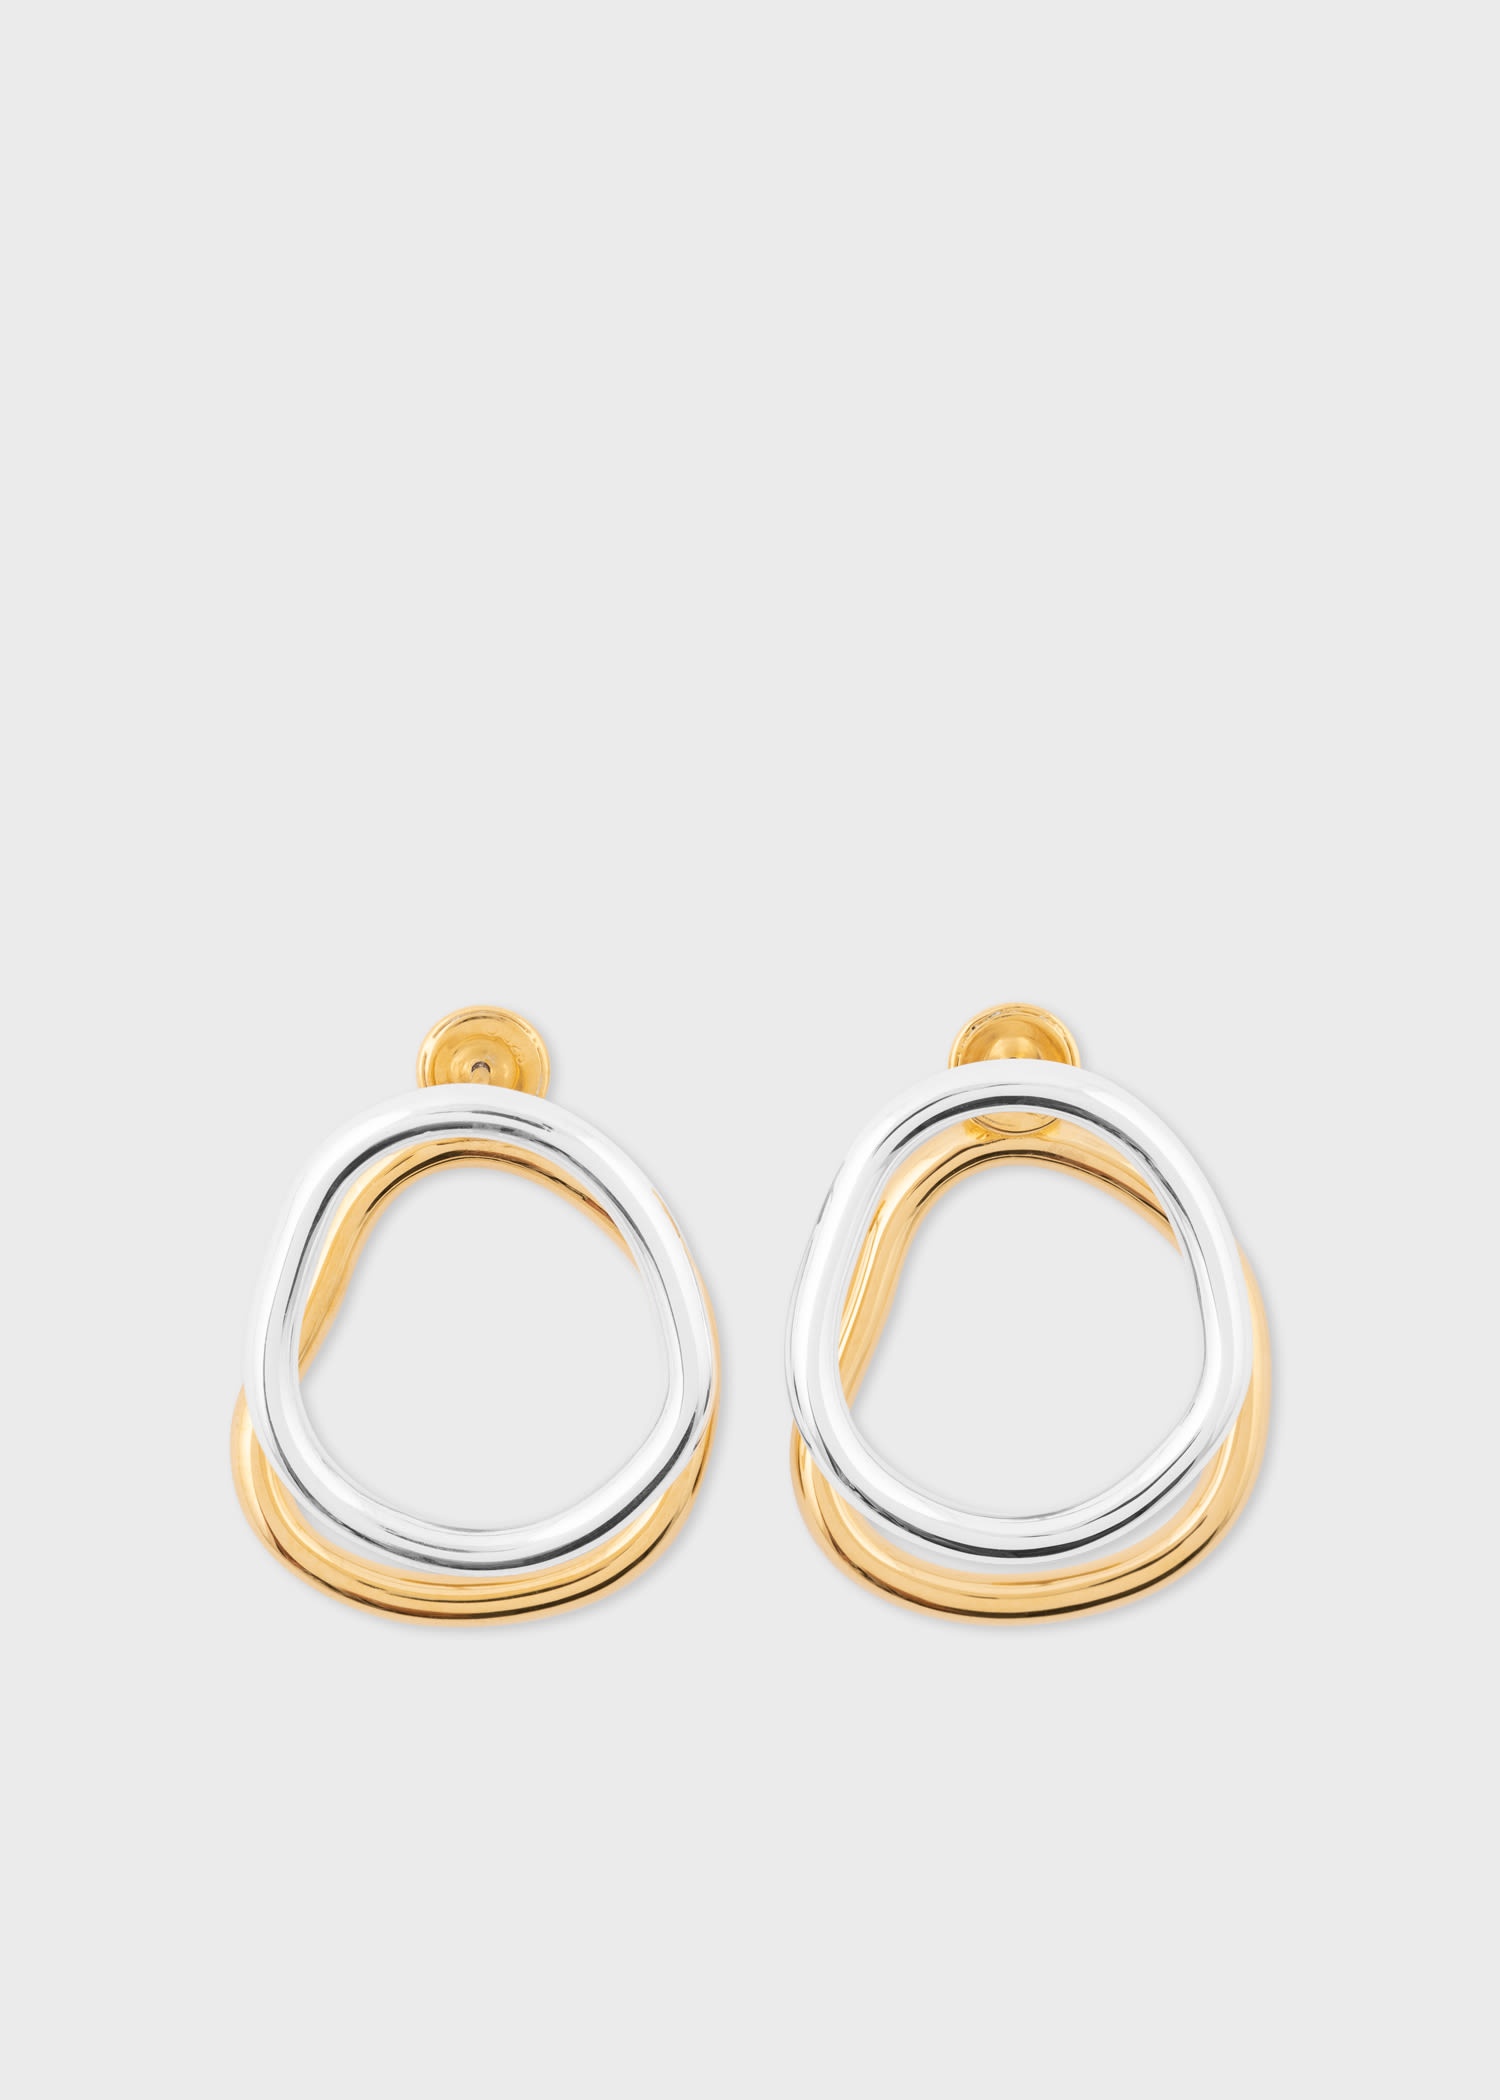 'Ova' Earrings by Jade Venturi - 1